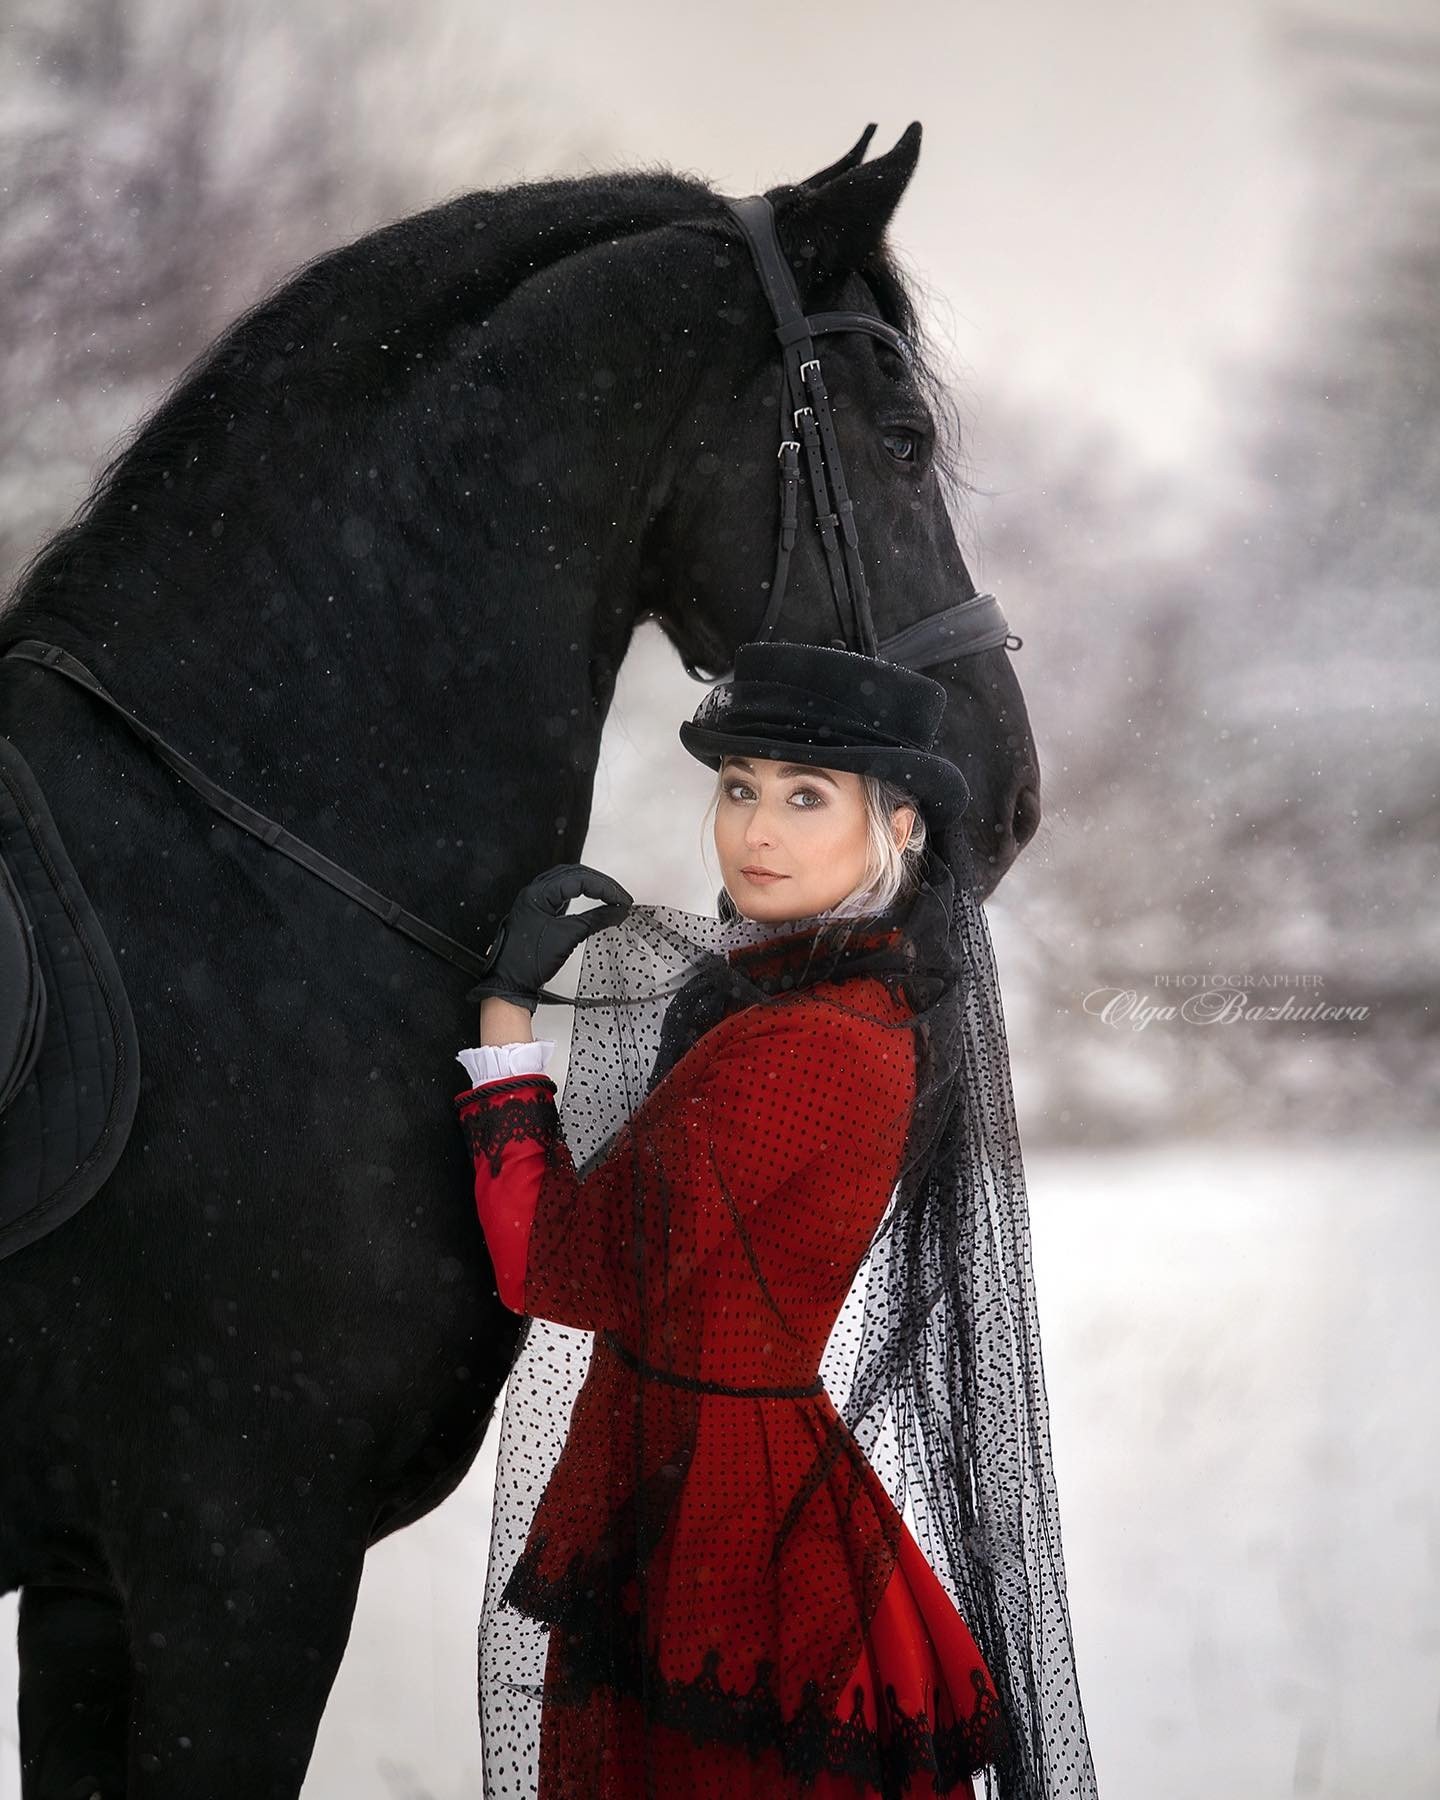 Olga Bazhutova fotografia equestre - Modelo em figurino vermelho posando com cavalo preto na neve